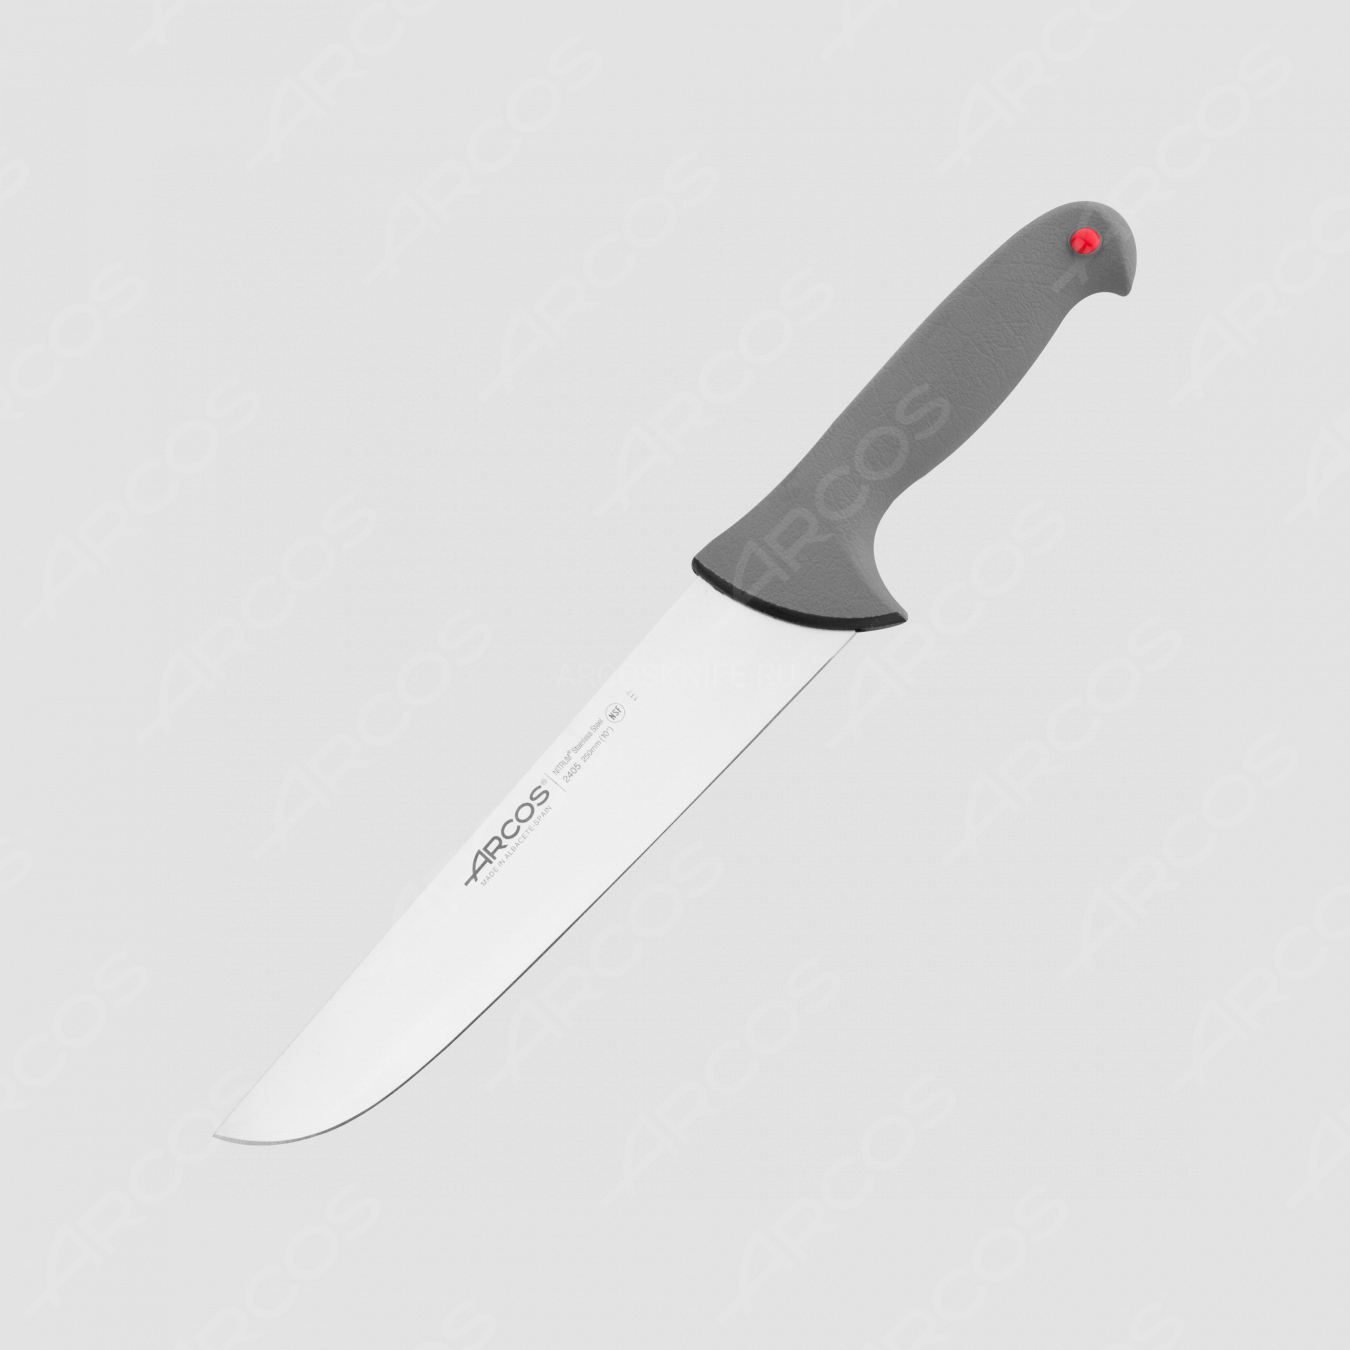 Нож кухонный разделочный 25 см, серия Colour-prof, ARCOS, Испания